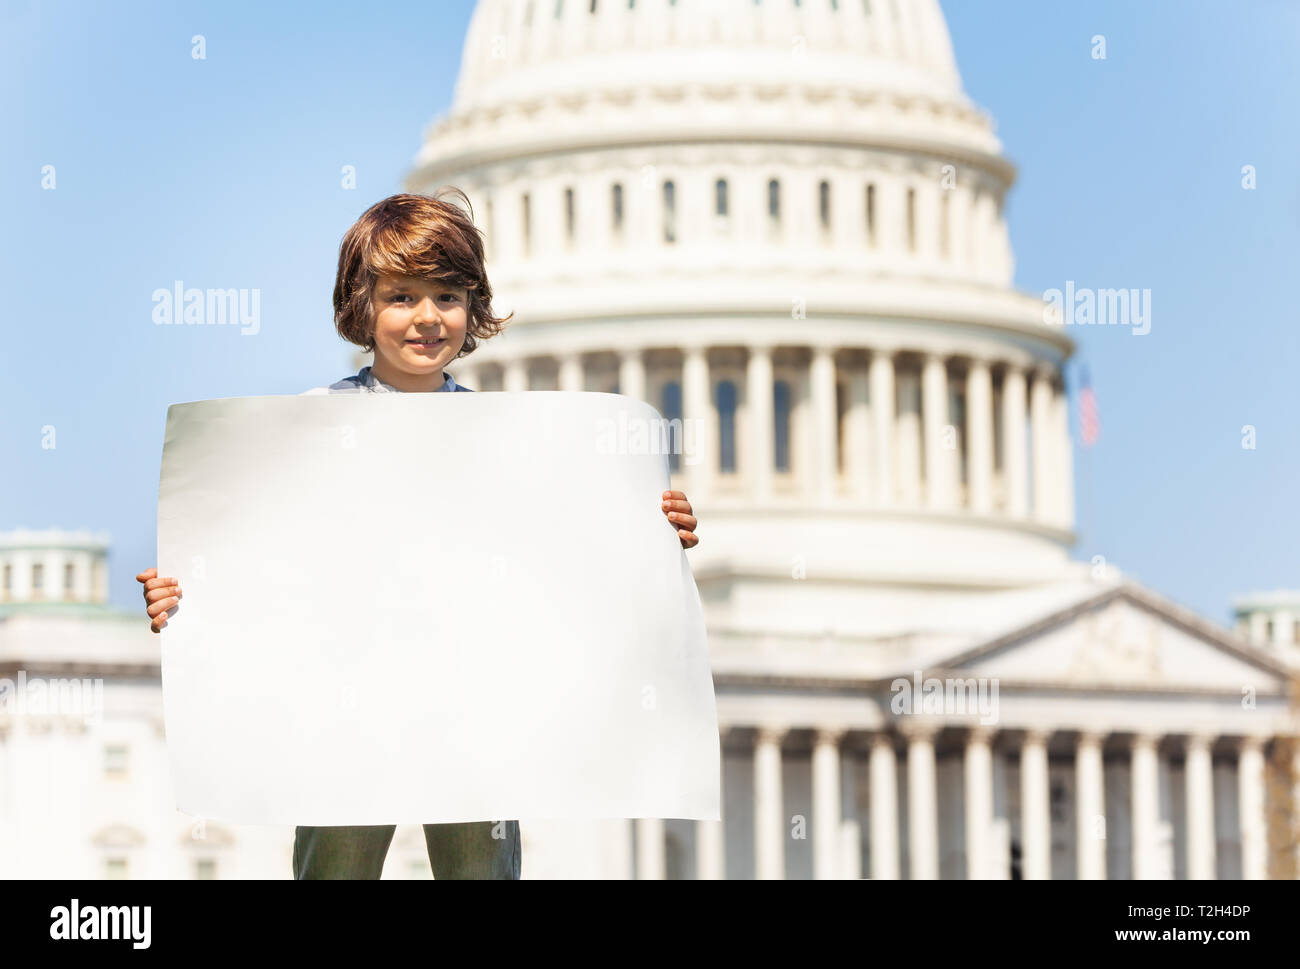 Niño boy protesta frente al Capitolio en Washington, EE.UU. celebración firmar en blanco con espacio de copia Foto de stock